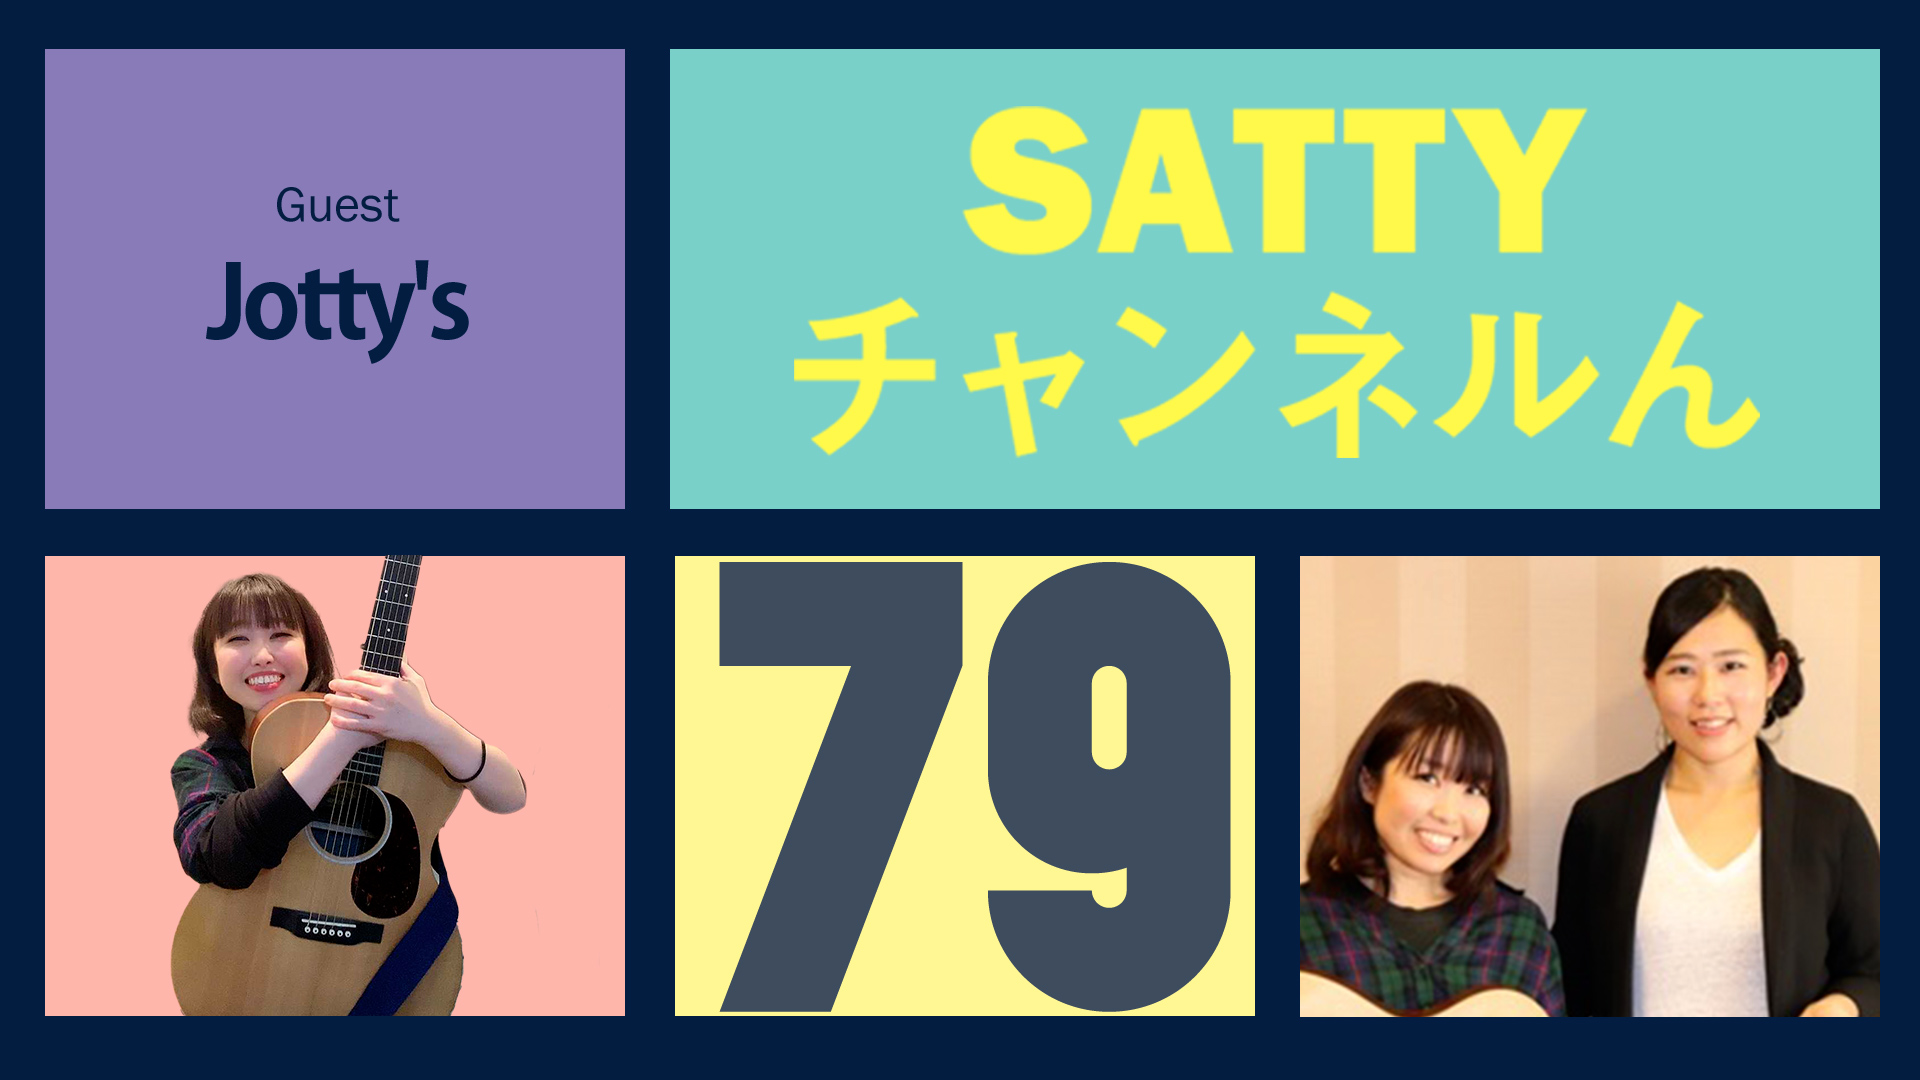 Guest Jotty'sとトーク! ラジオ「Sattyチャンネルん」#79